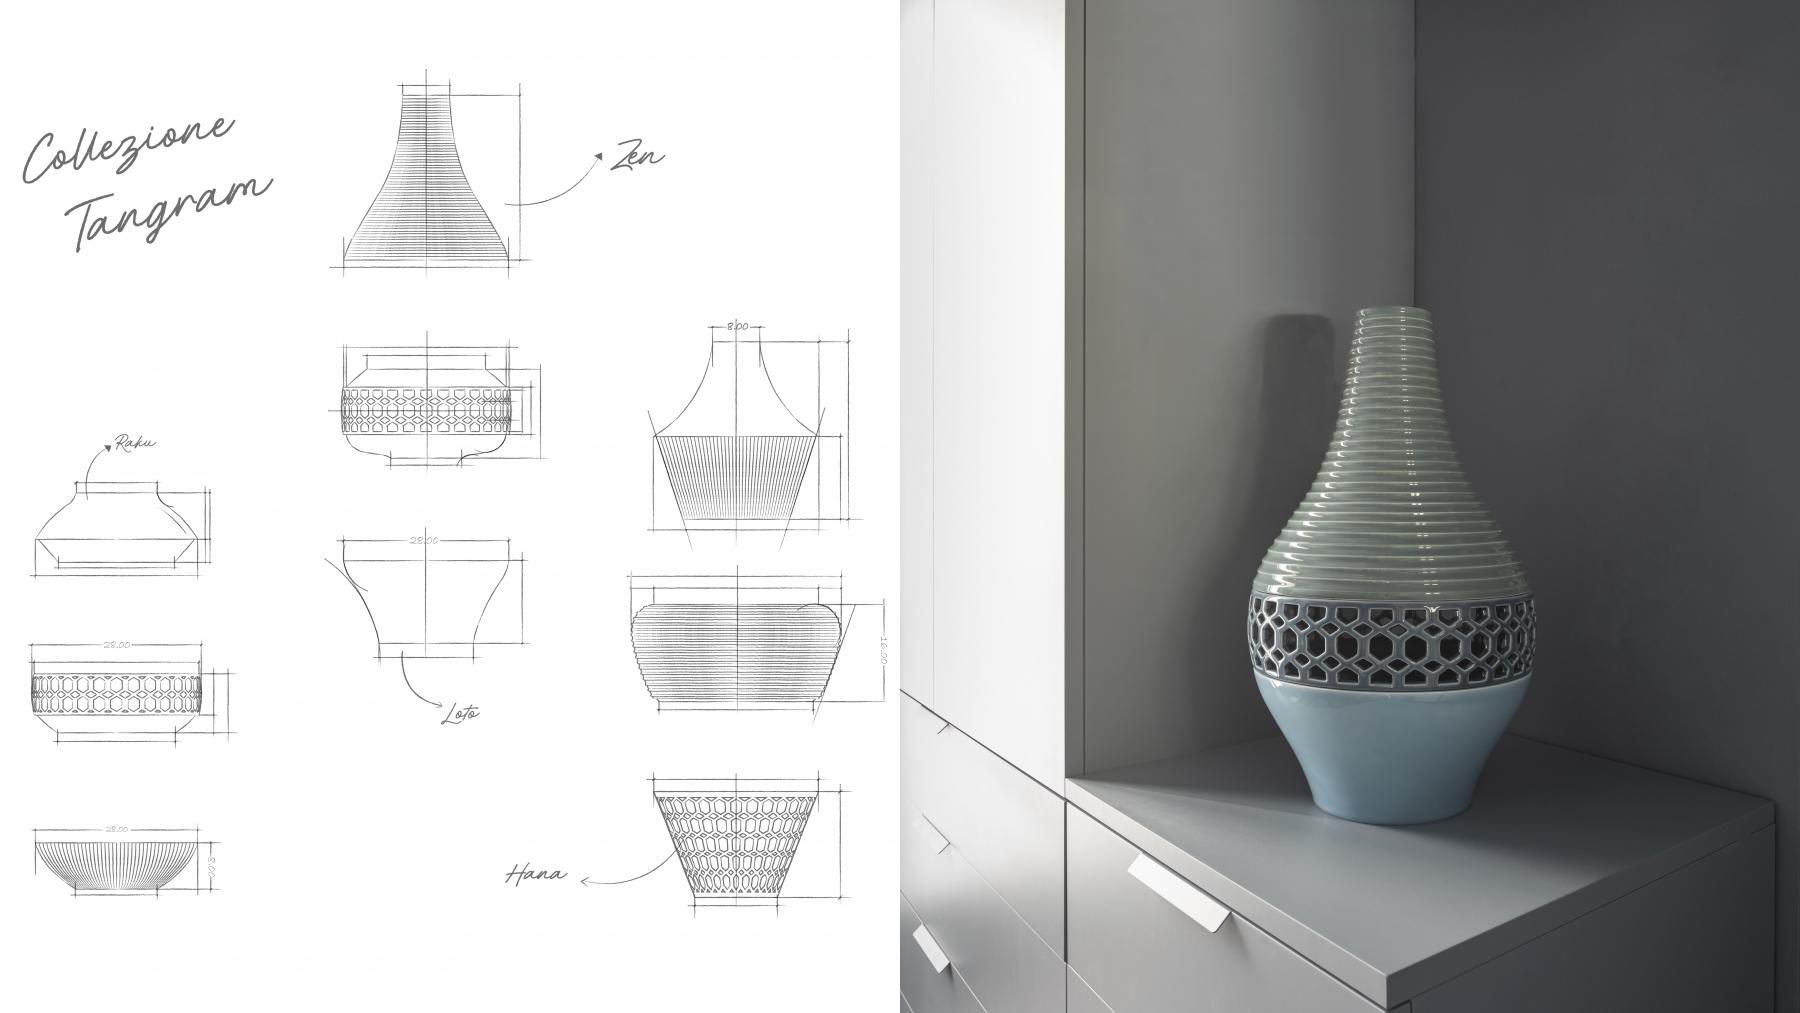 2.-Collezione-Tangram-Vasi-componibili-handmade-Designed-by-Andrea-Castrignano